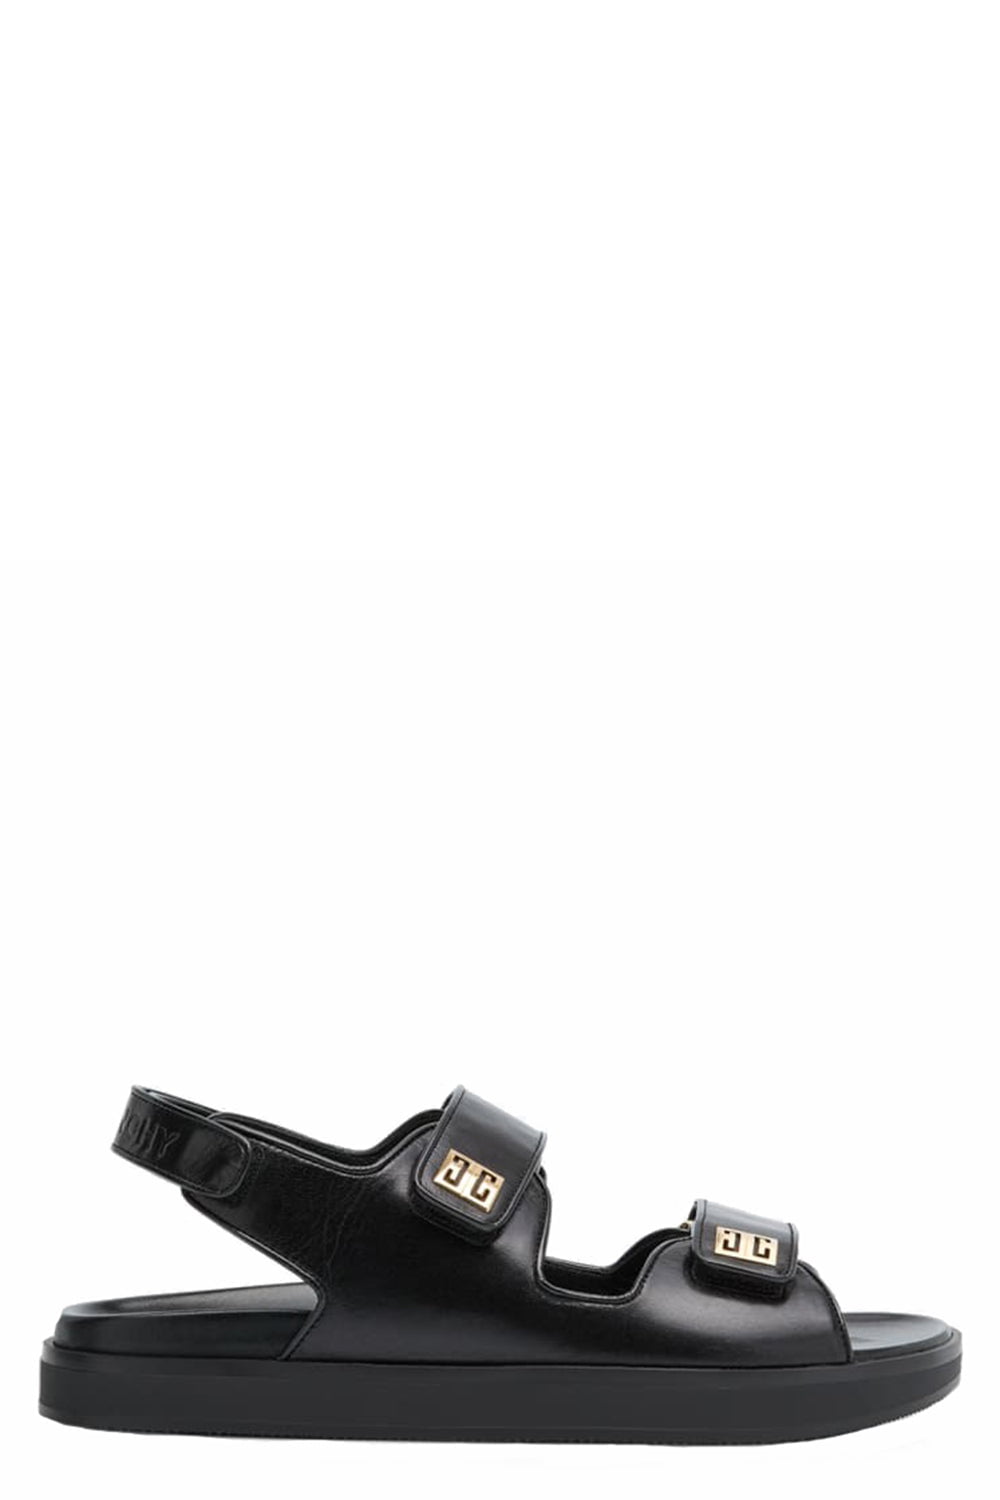 GIVENCHY-4G Adjustable Slingback Sandal-